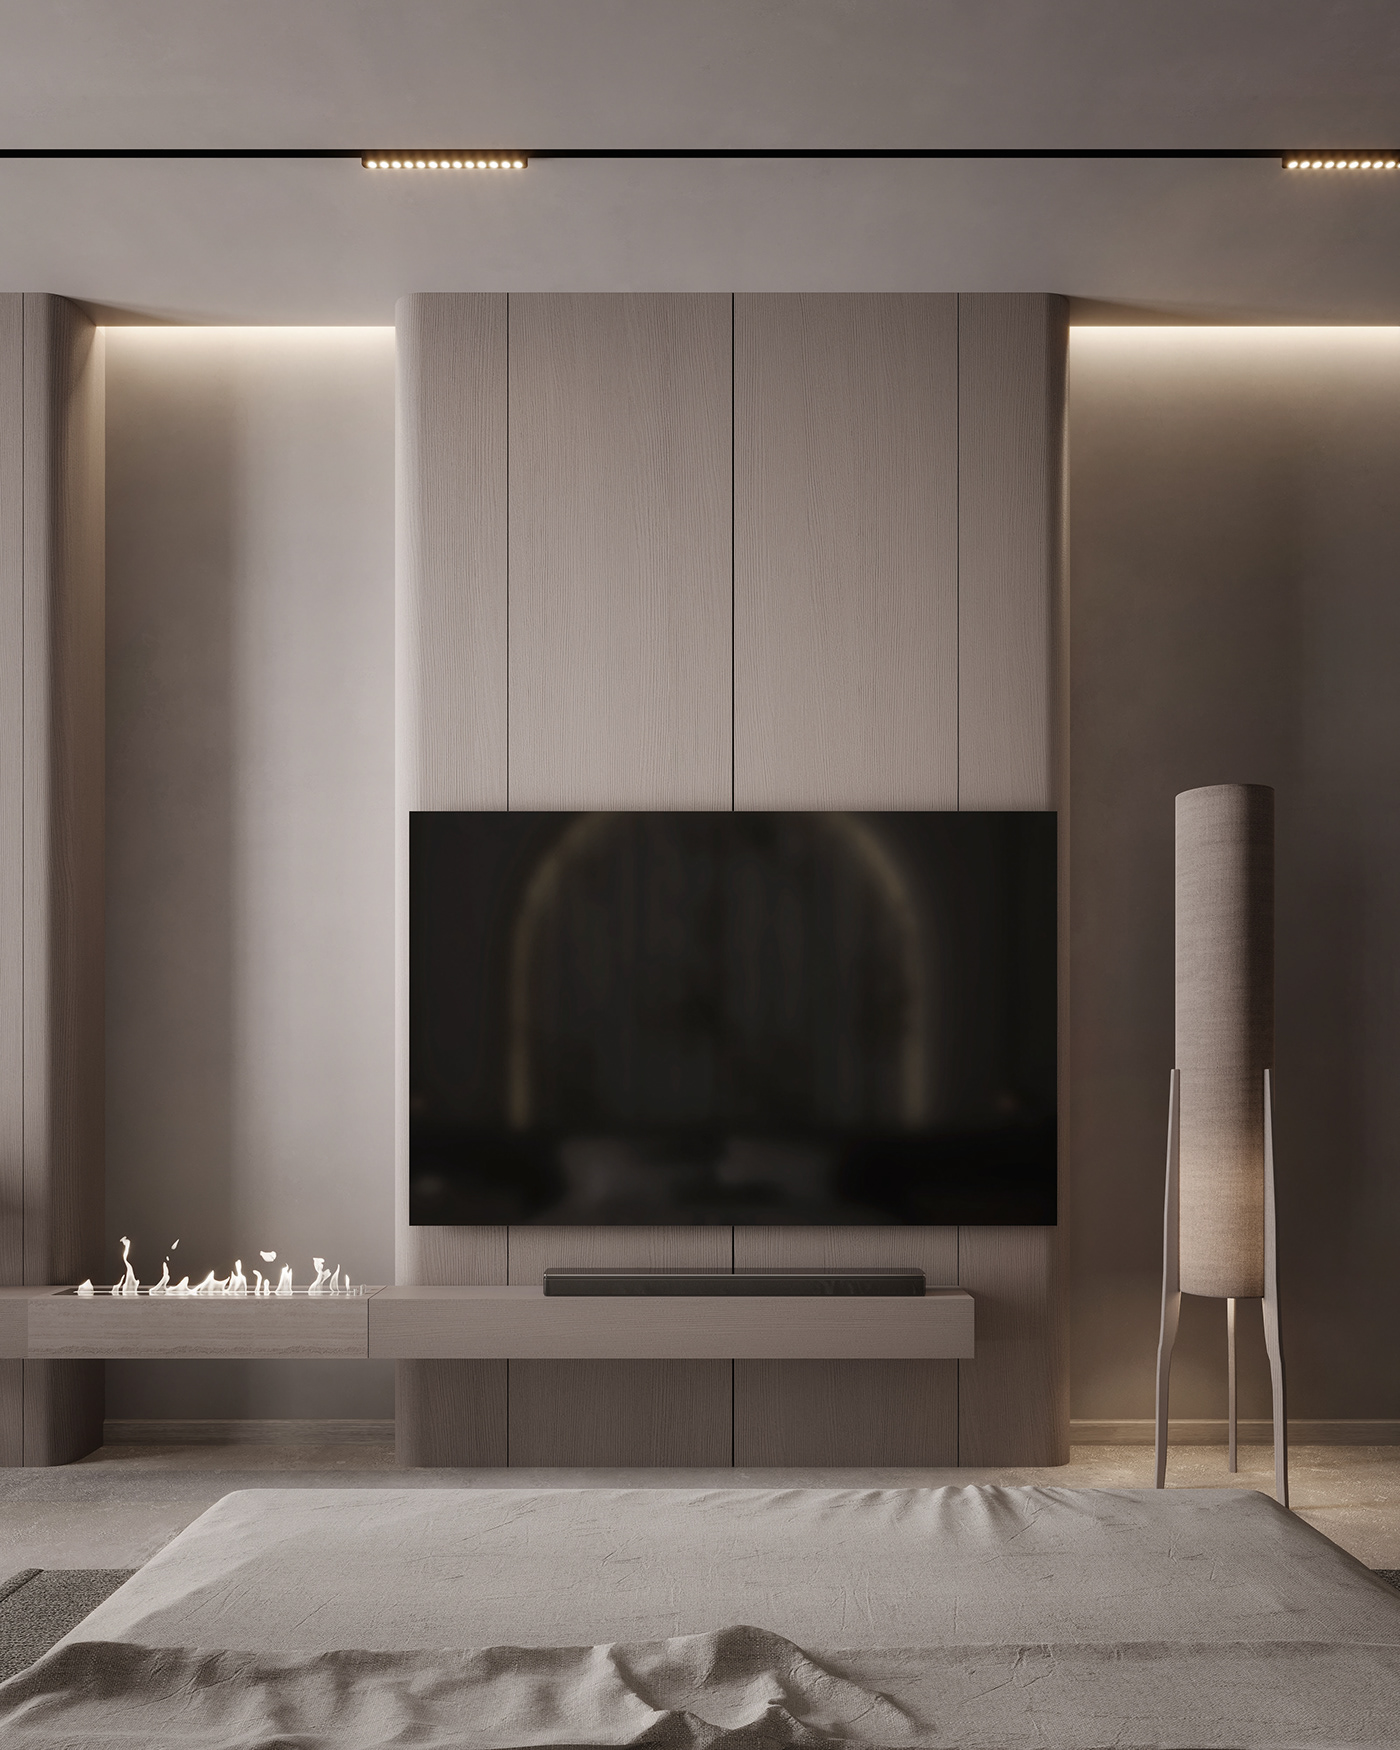 furniture interior design  architecture Render visualization modern 3ds max exterior CGI archviz